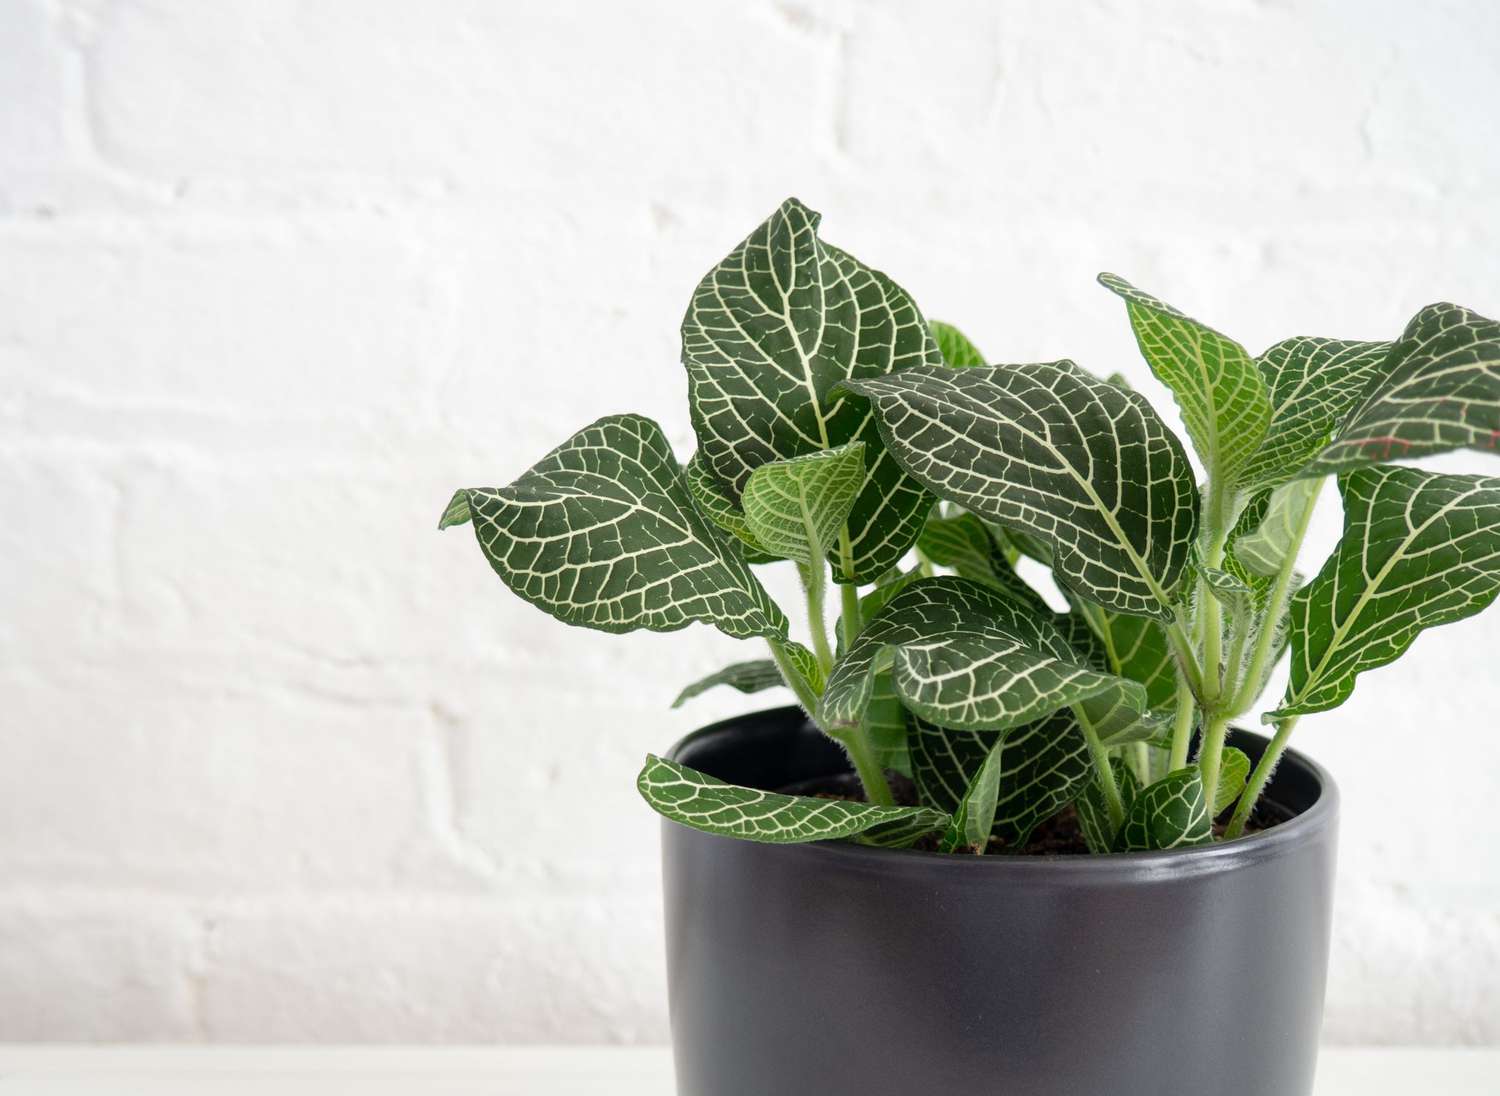 Planta nervosa com veias brancas marcantes em folhas verdes profundas em um vaso preto